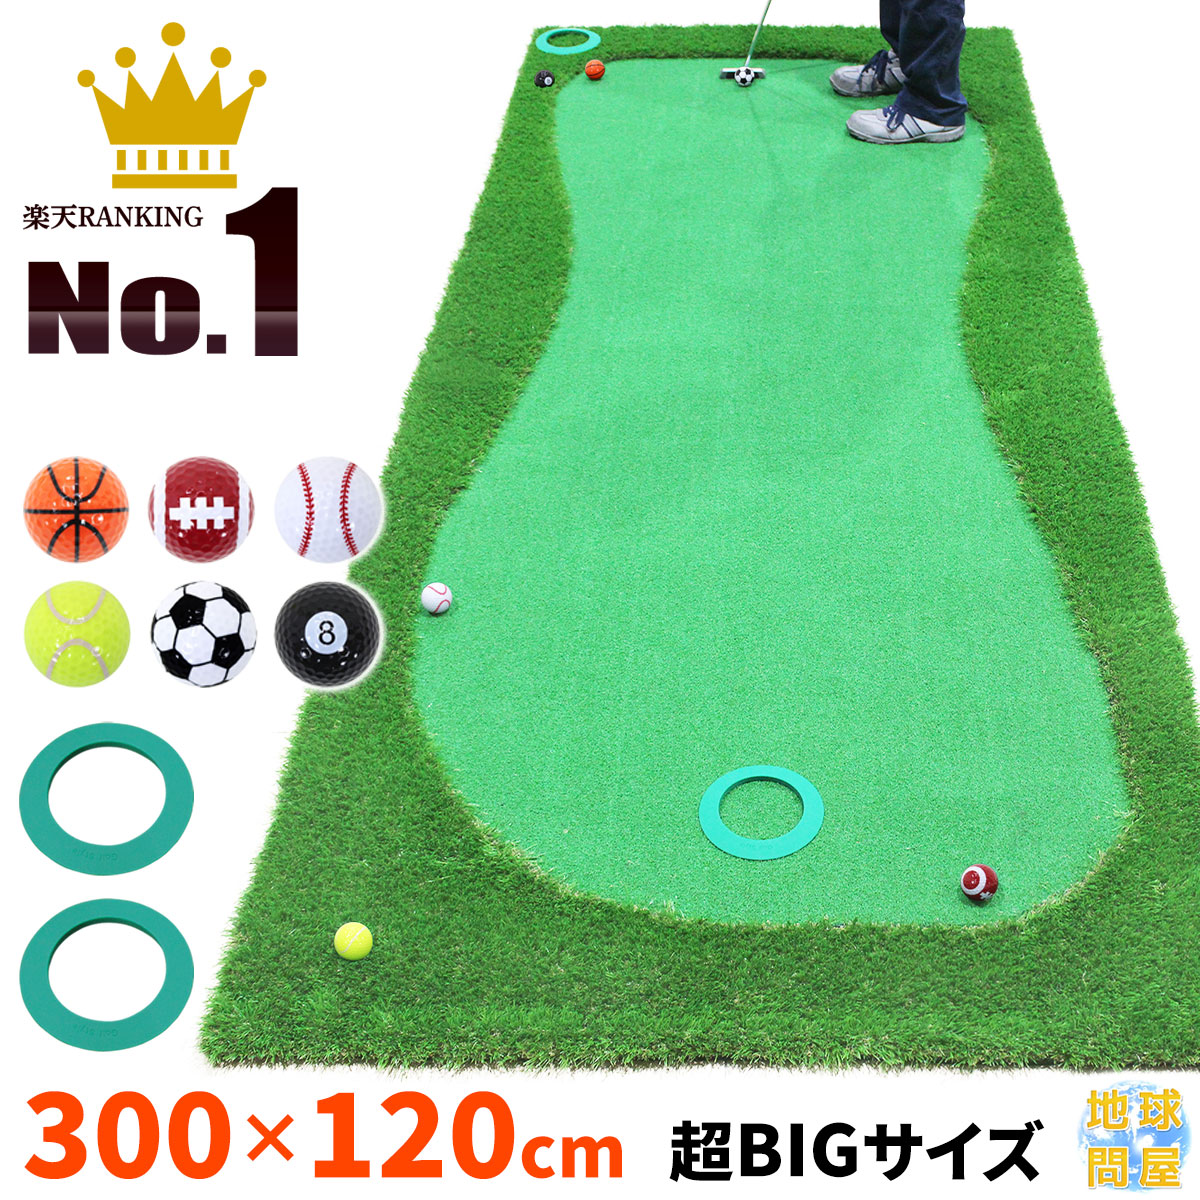 【楽天市場】パターマット 3m ゴルフ パター 練習 マット ゴルフ 